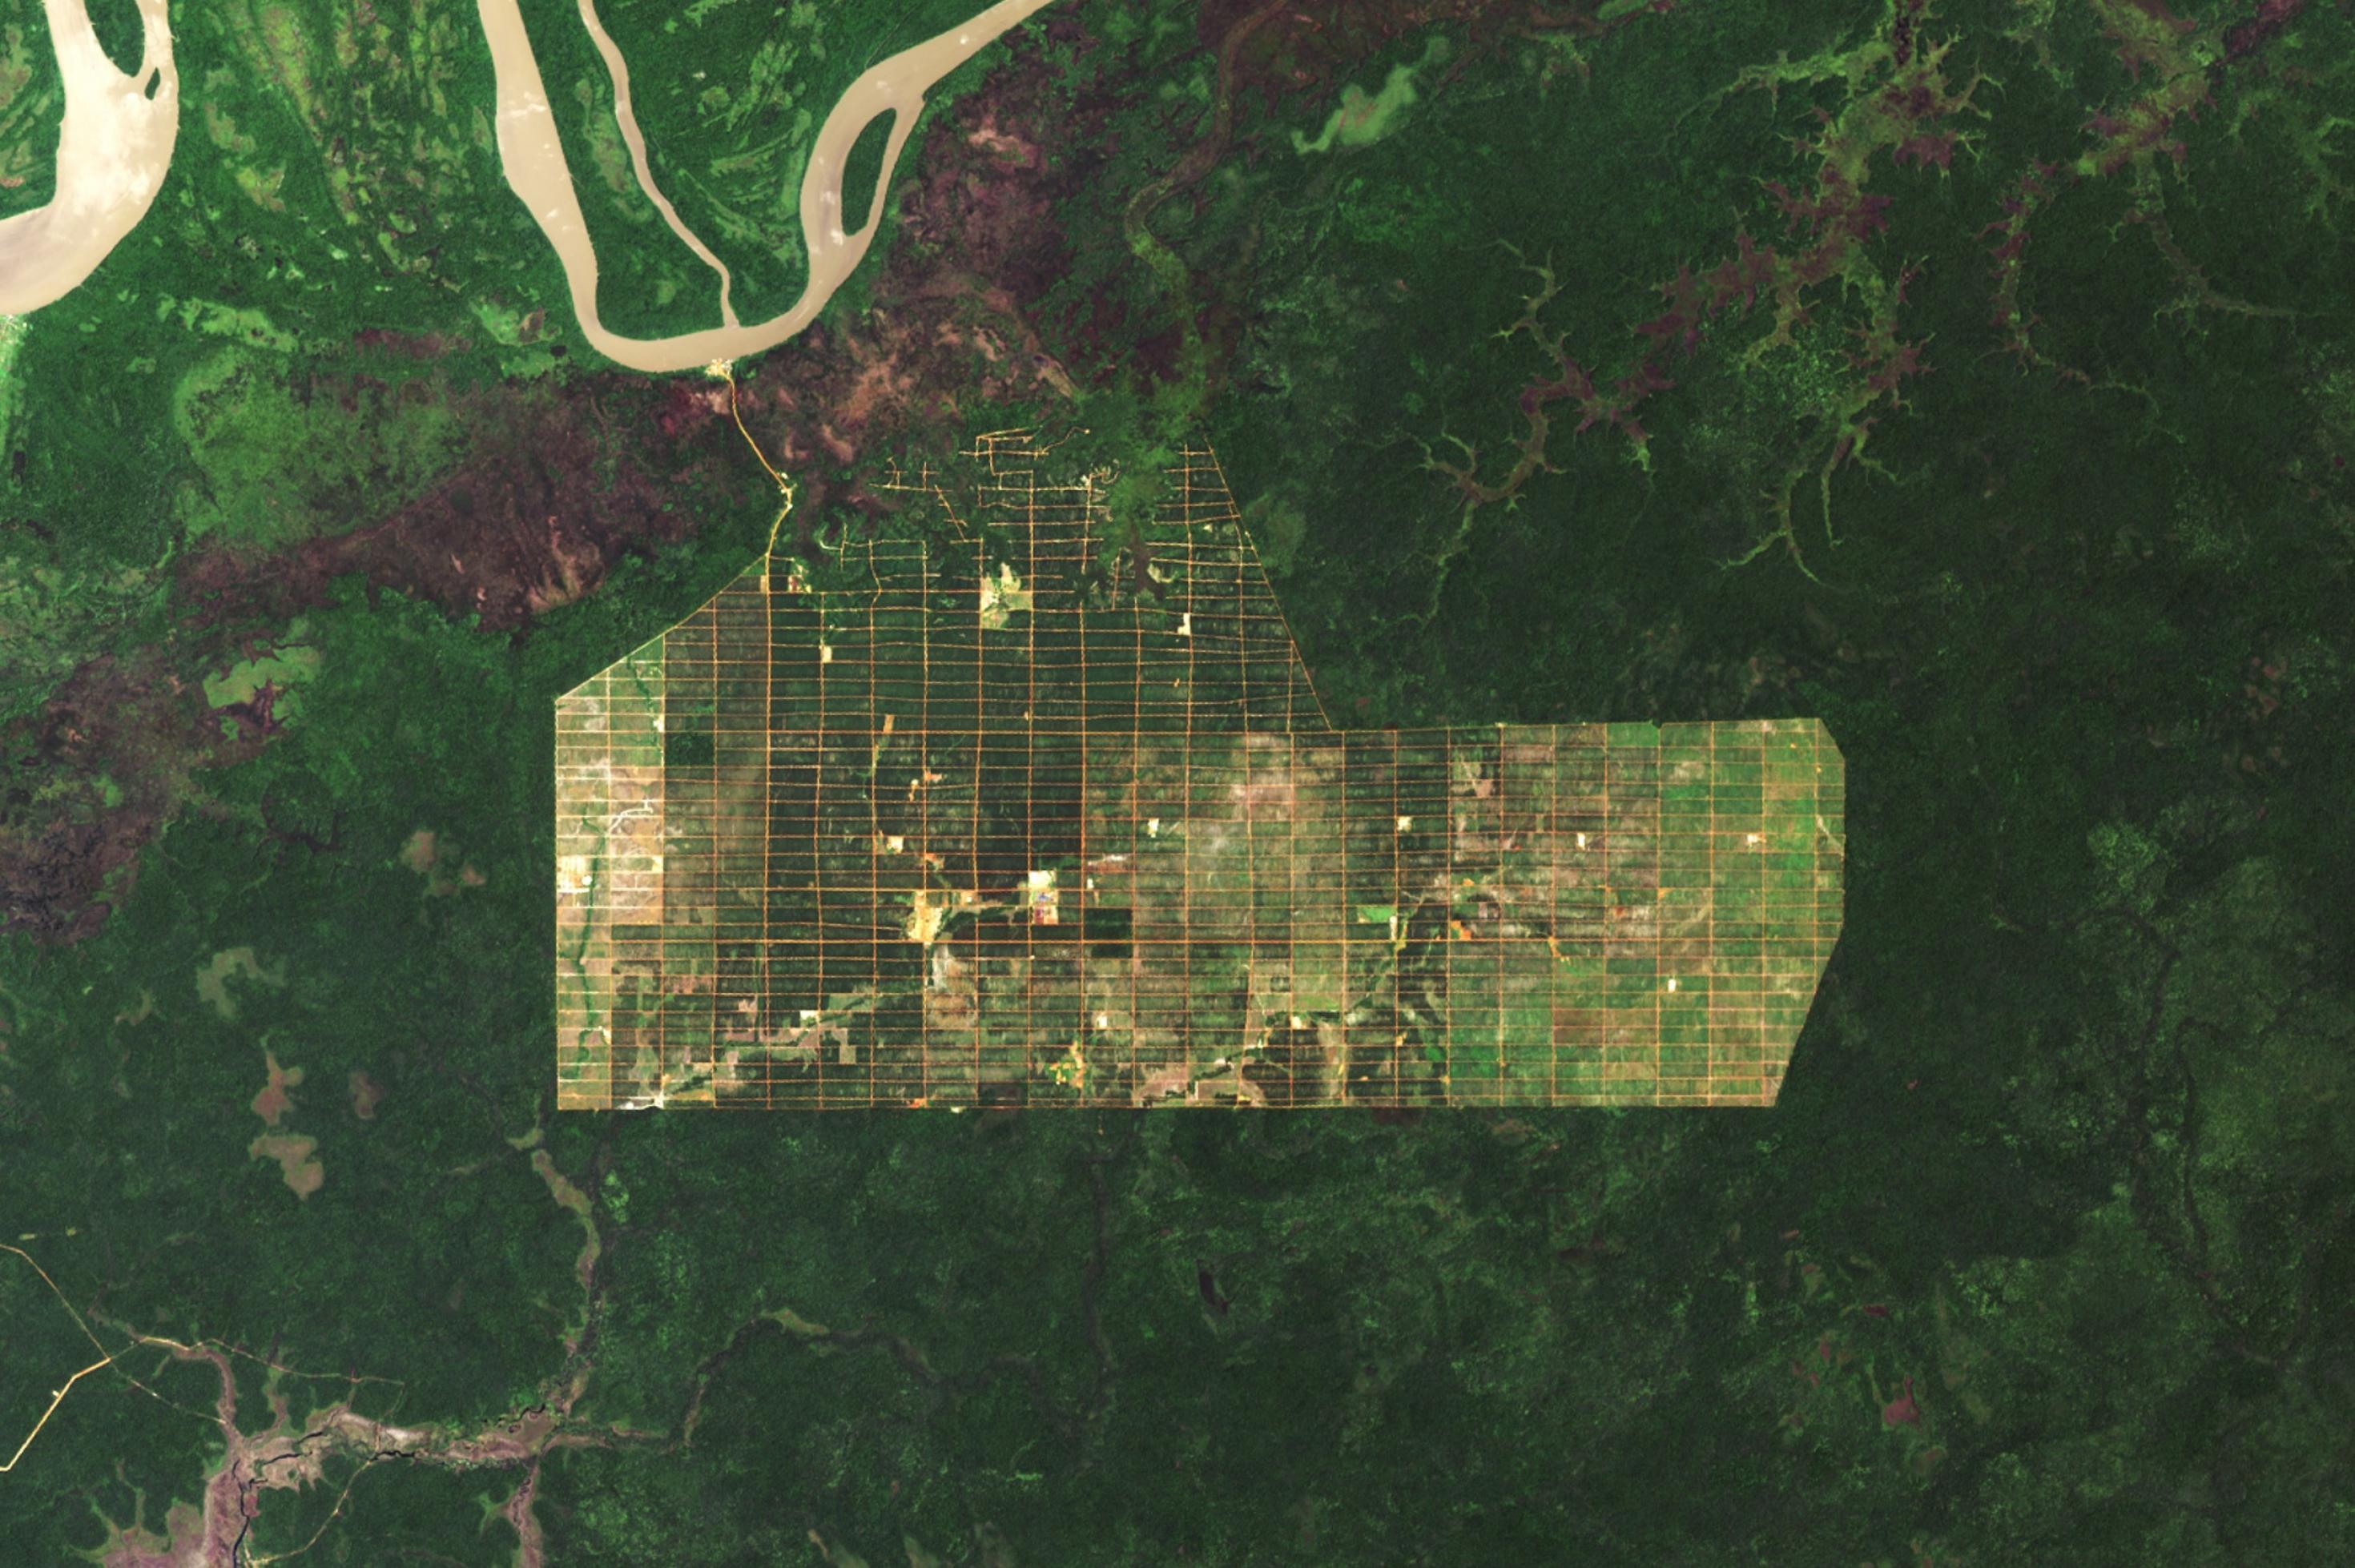 Das Satellitenbild zeigt eine grüne Regenwald-Landschaft samt Fluss, in deren Mitte eine Plantage angelegt wurde, die in Quadrate zerteilt ist.